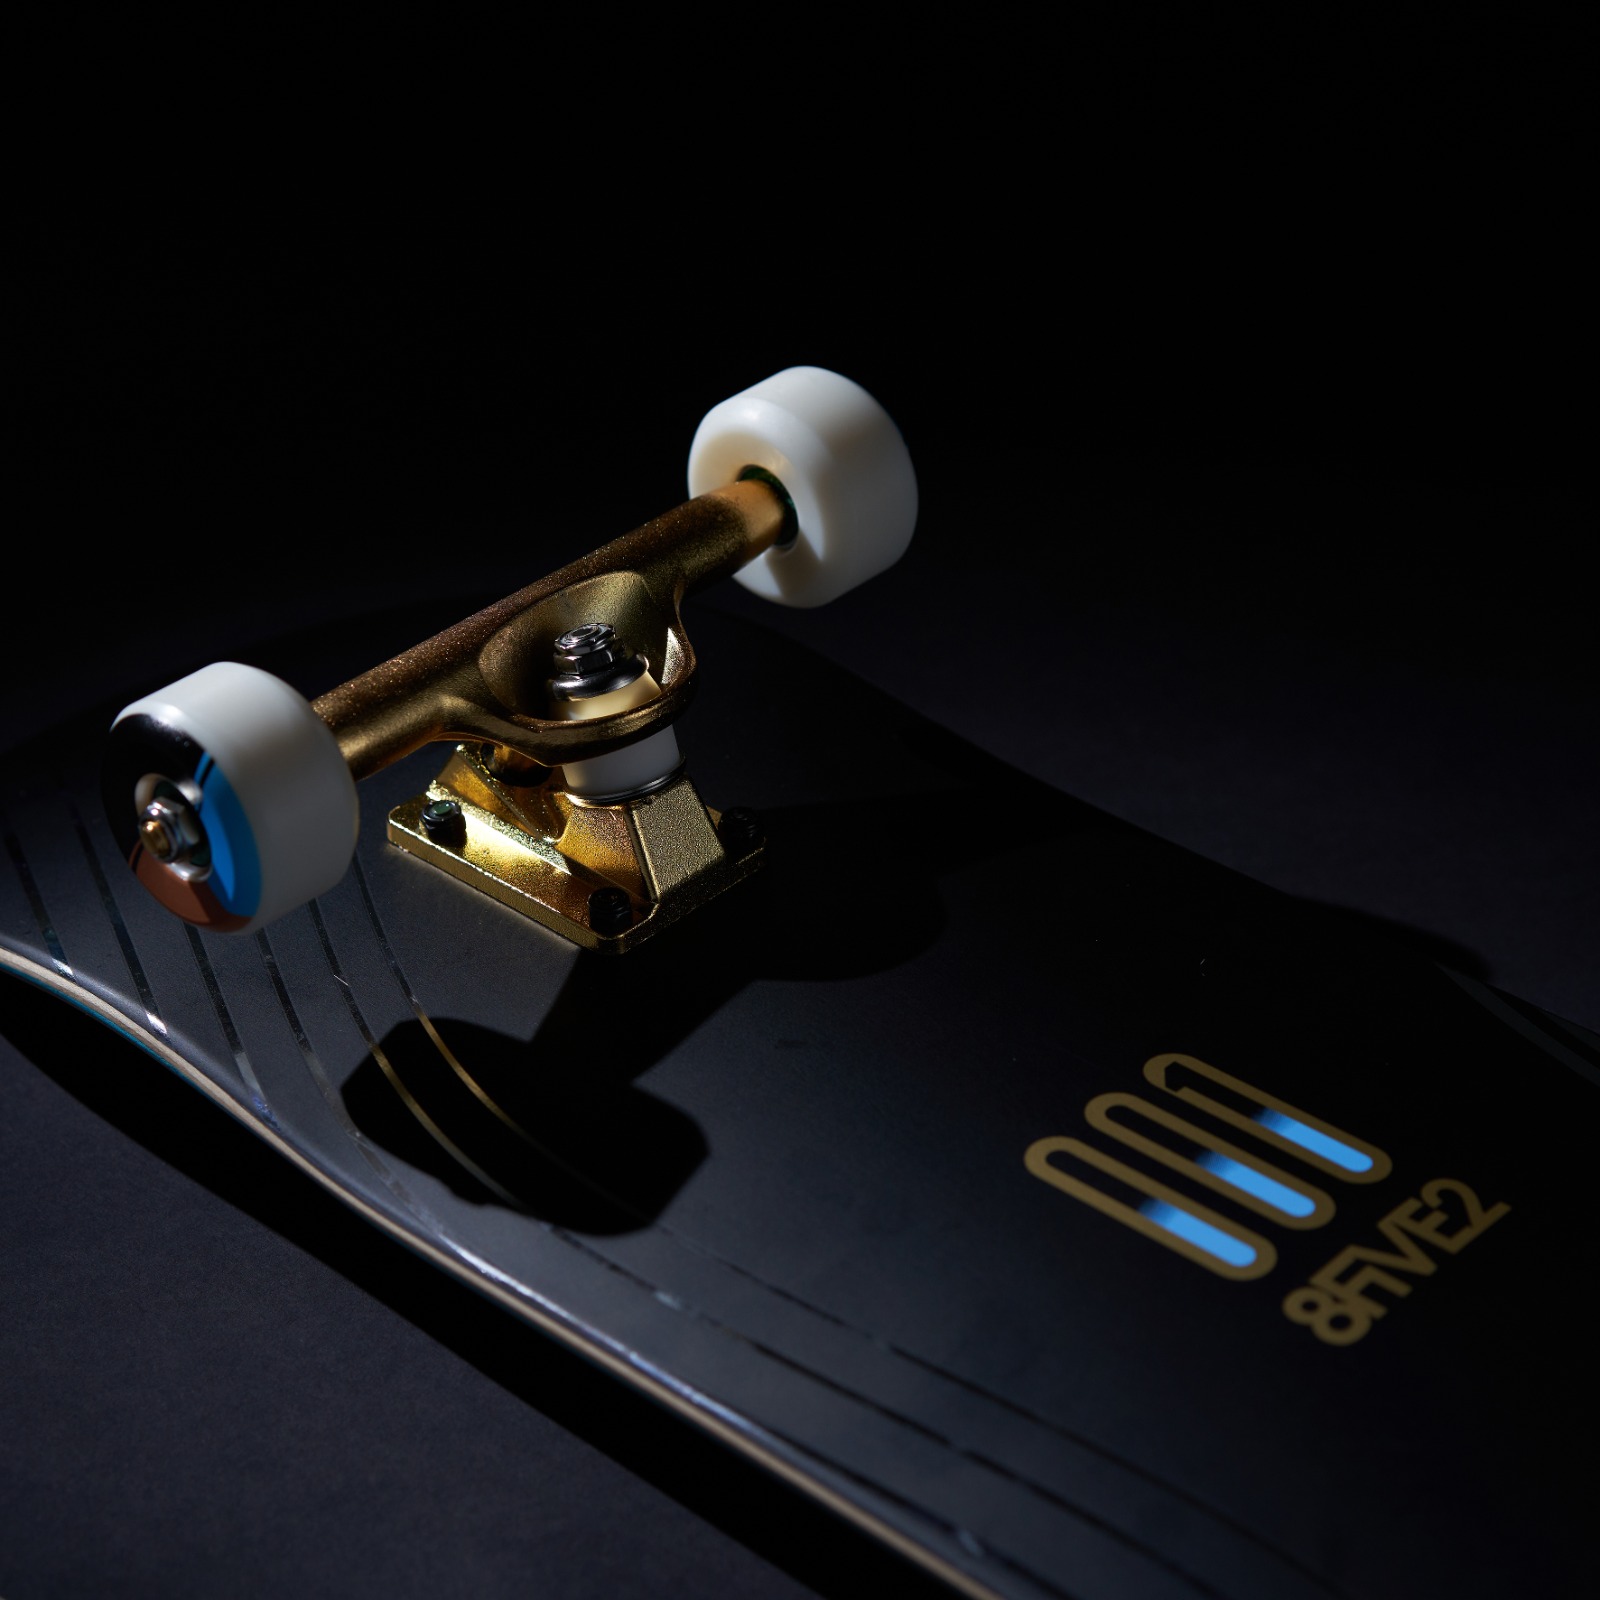 滑出時尚快感｜Durex x 8FIVE2合辦滑板界年度矚目比賽，宣揚「潤滑」安全快感